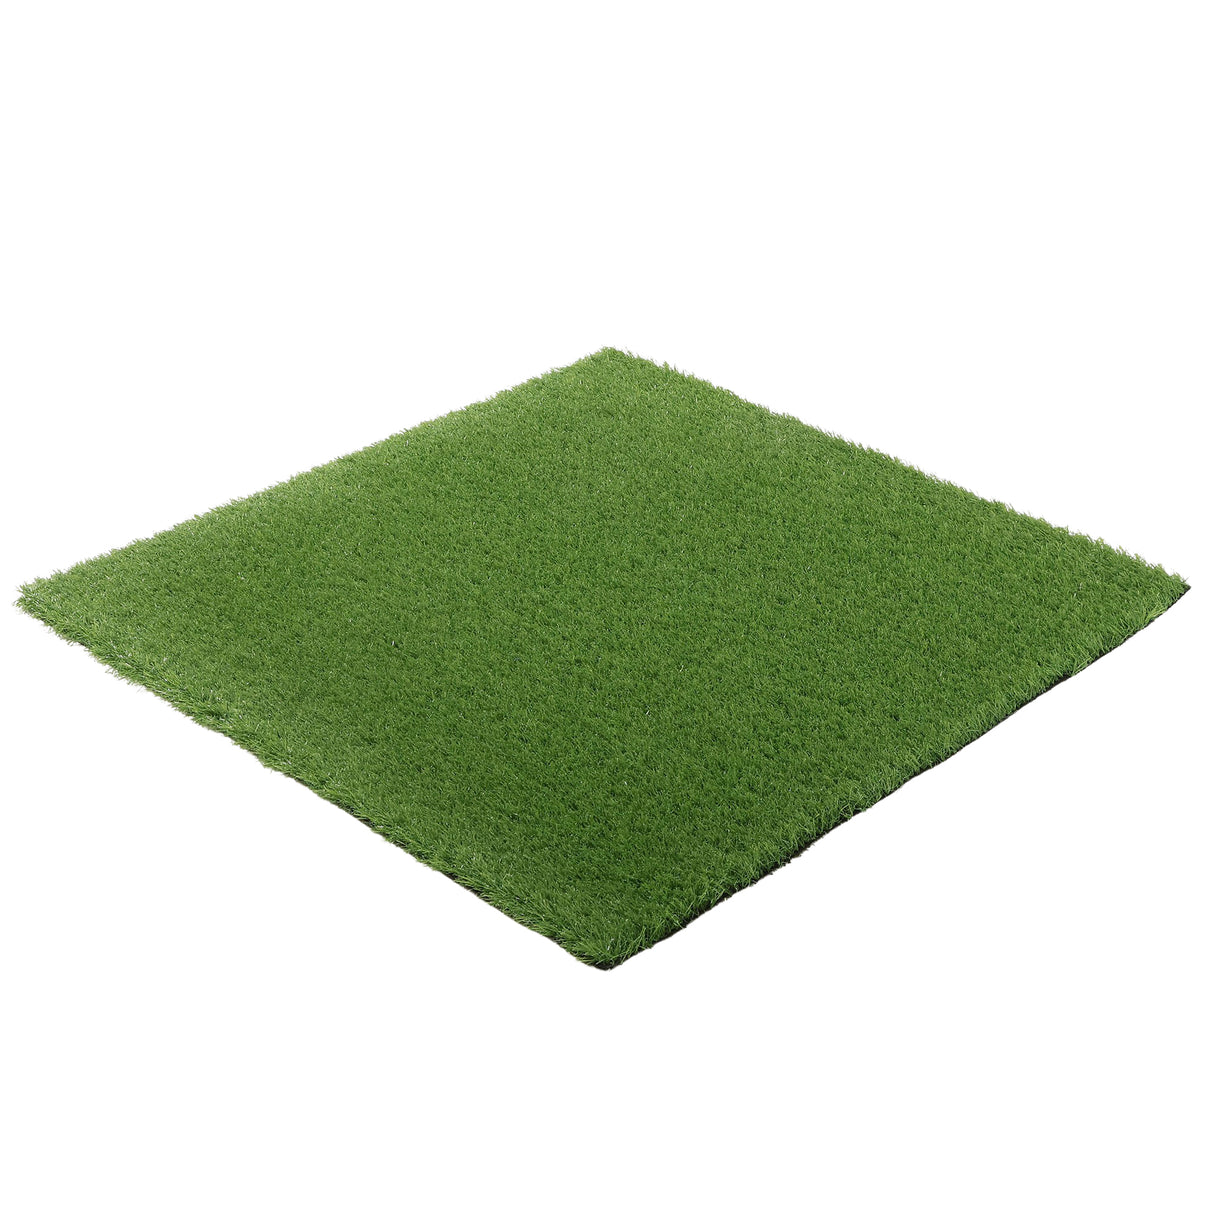 Artificial grass for gym 1m x 10m